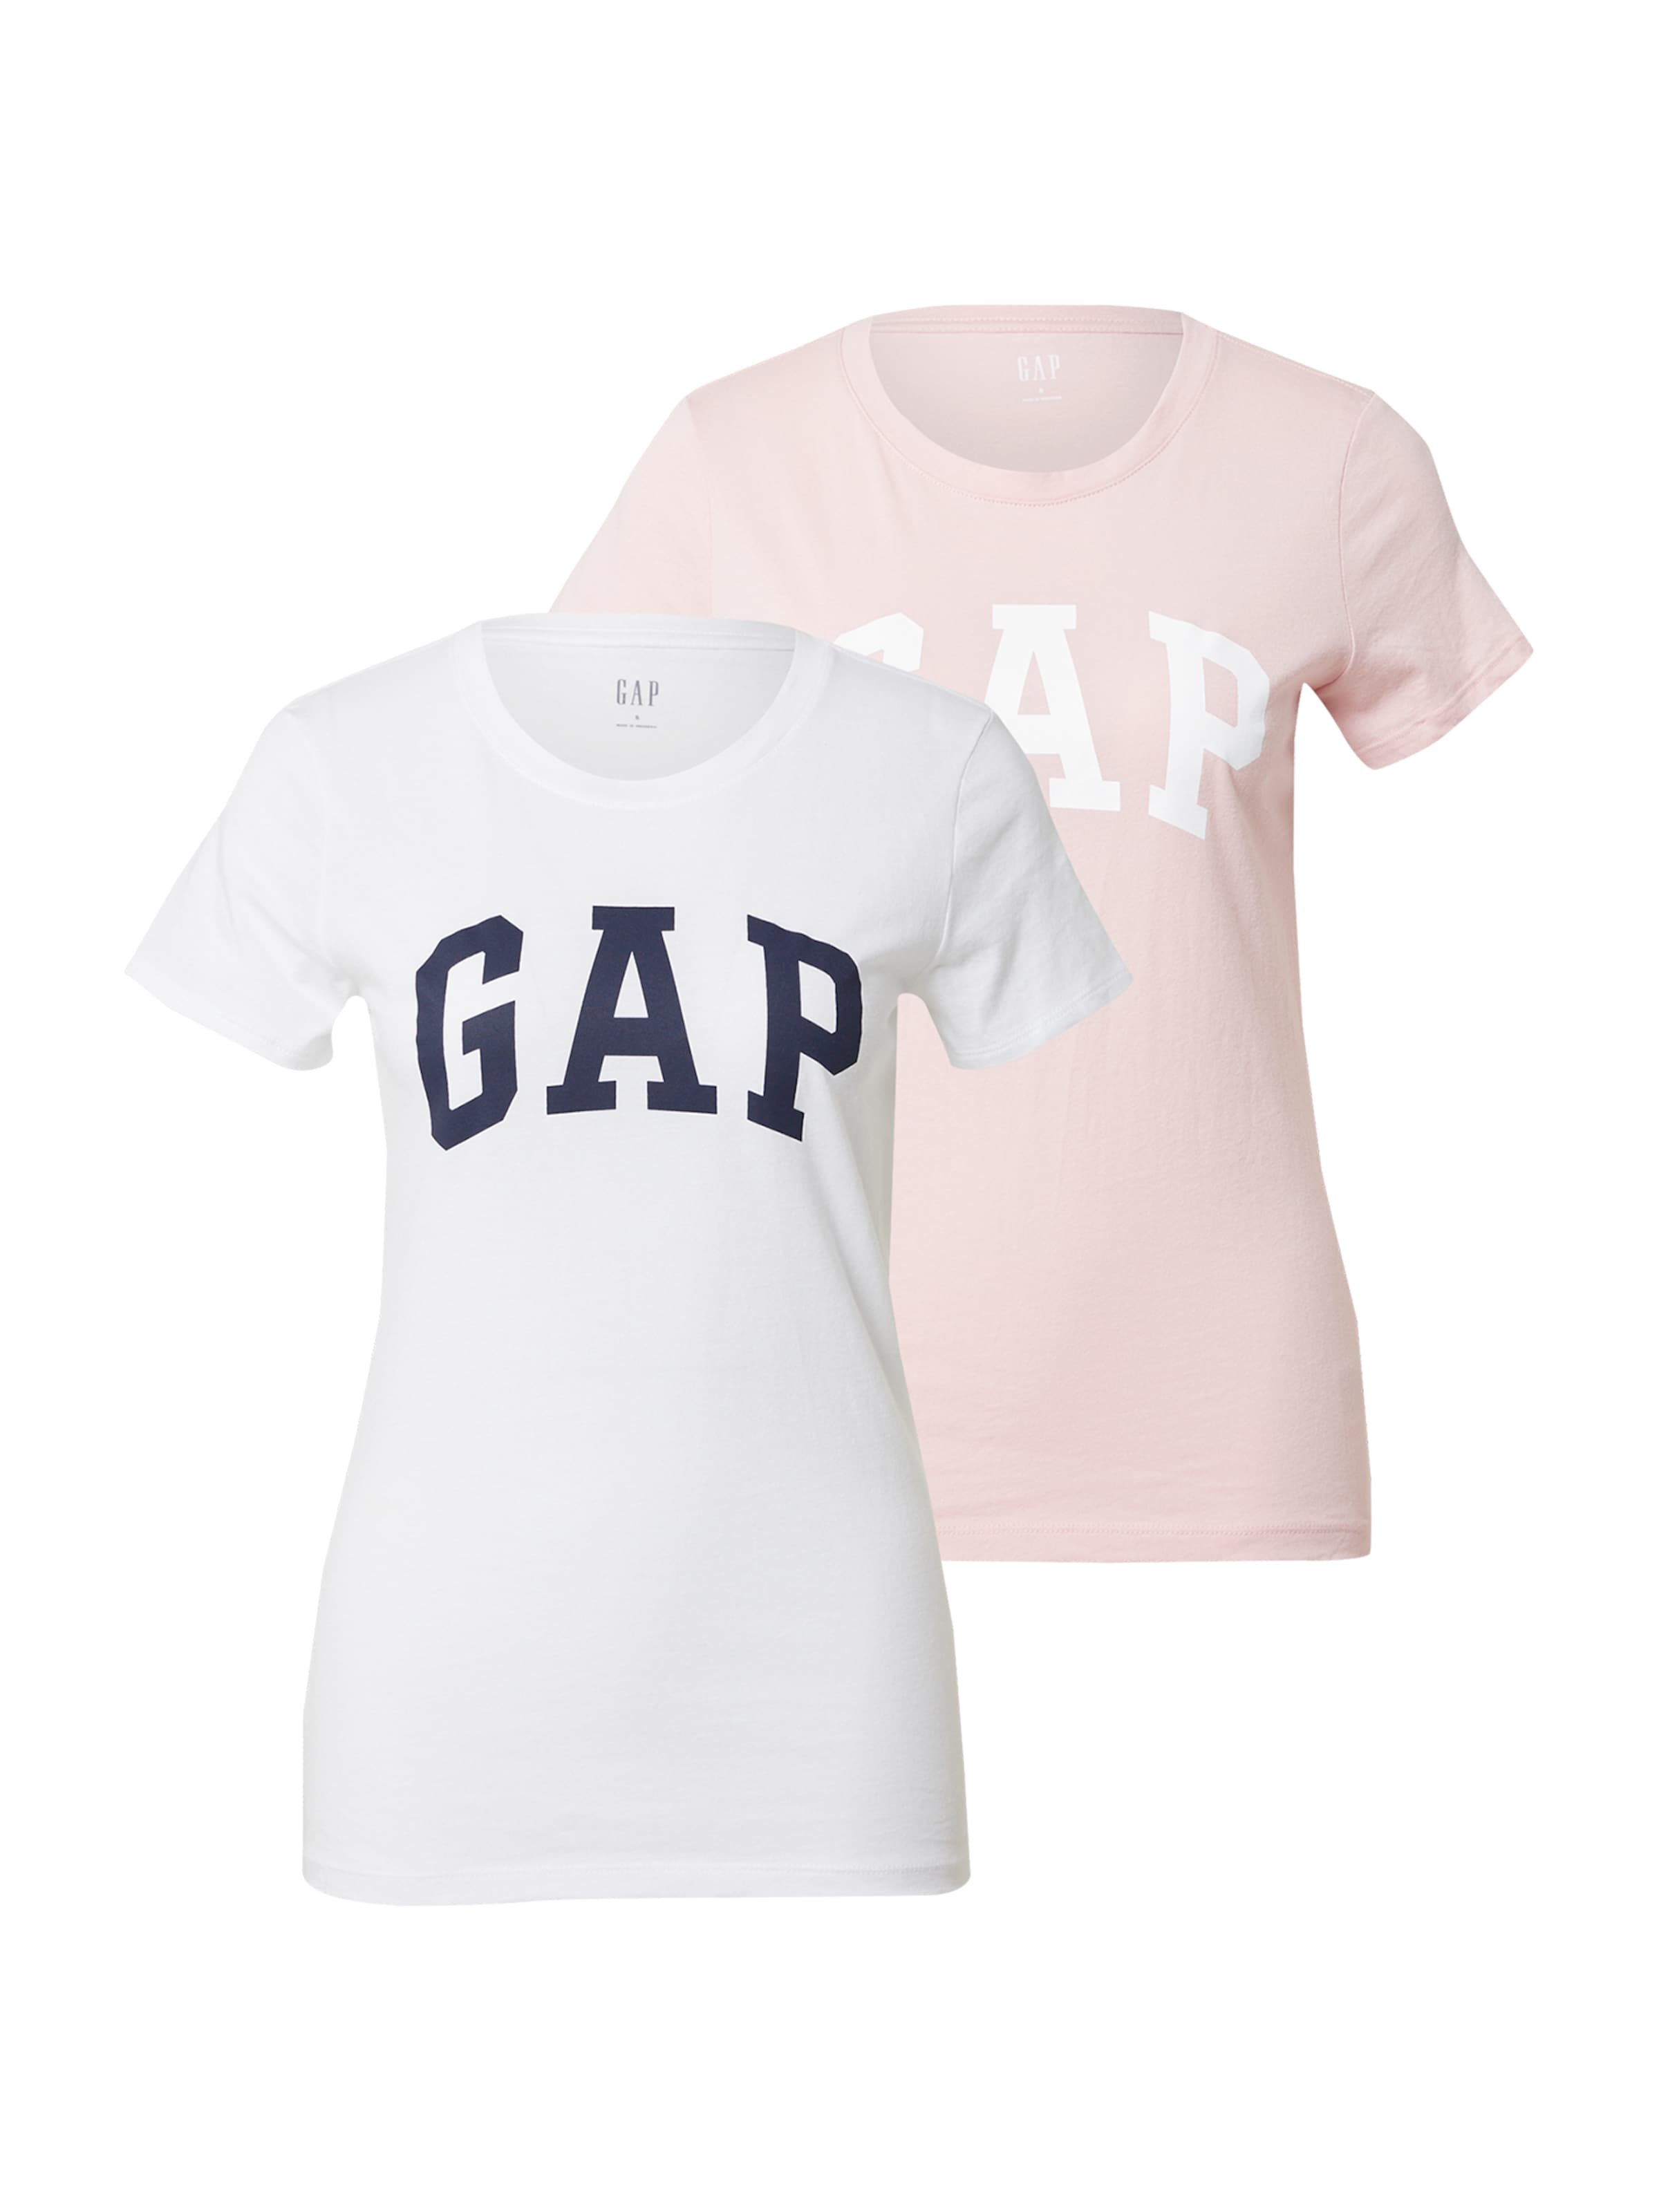 gap t shirts for women